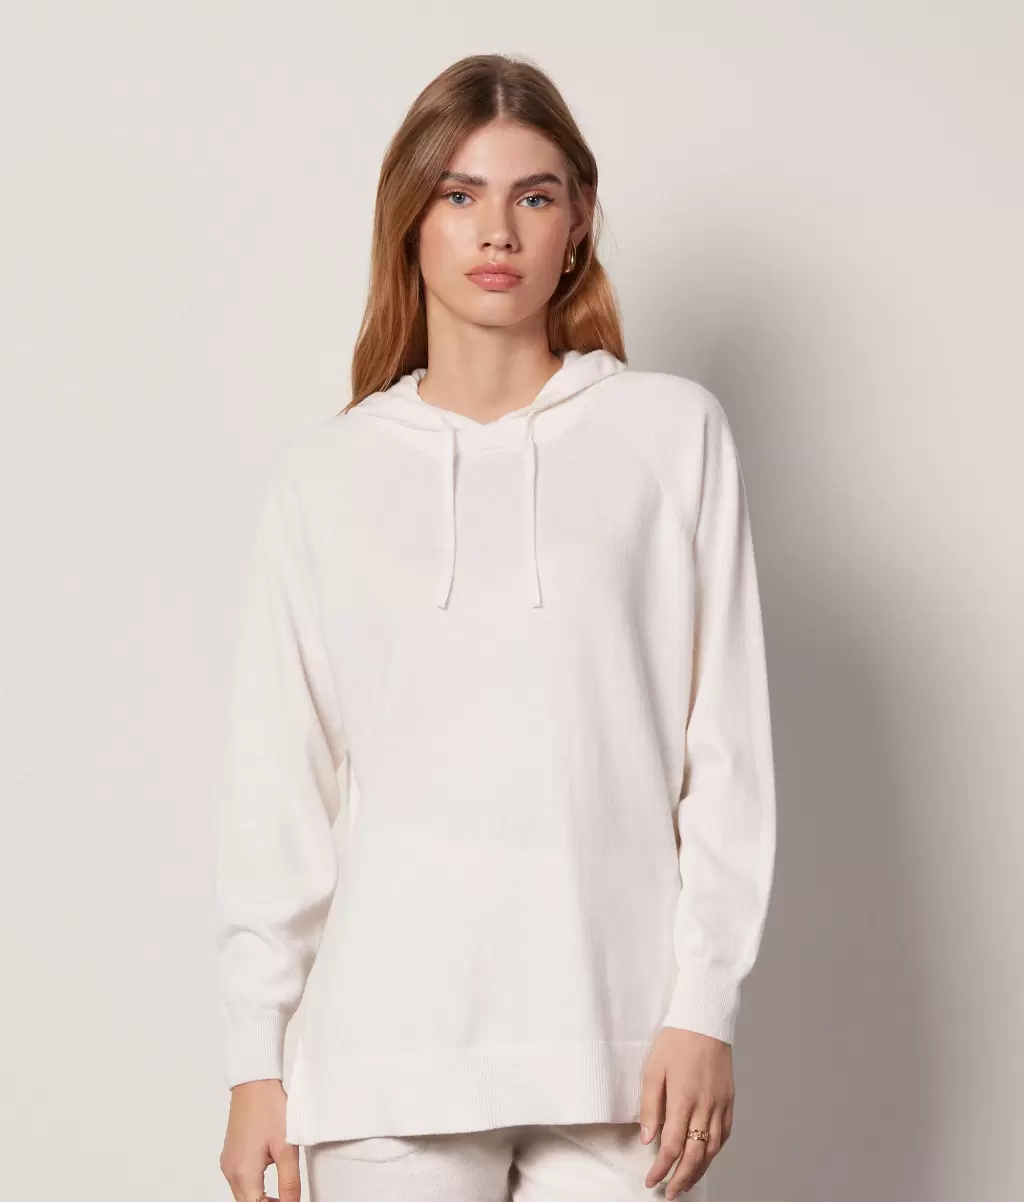 White Długa Bluza Z Kapturem Z Kaszmiru Ultrasoft Falconeri Swetry Z Okrągłym Dekoltem Kobieta - 1